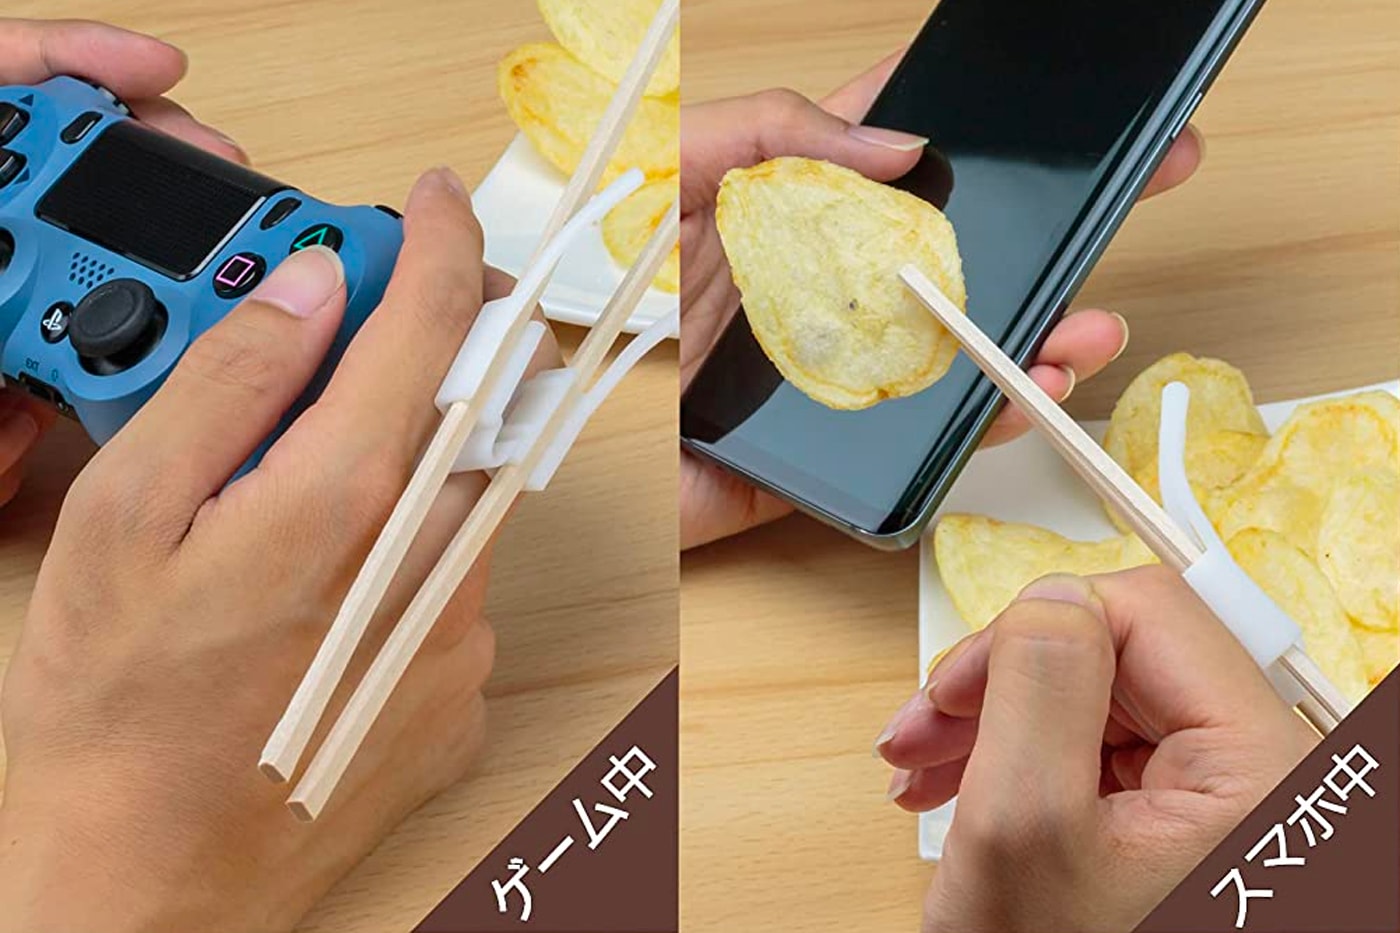 日本品牌 B’full 正式推出「電玩適用」筷子配件